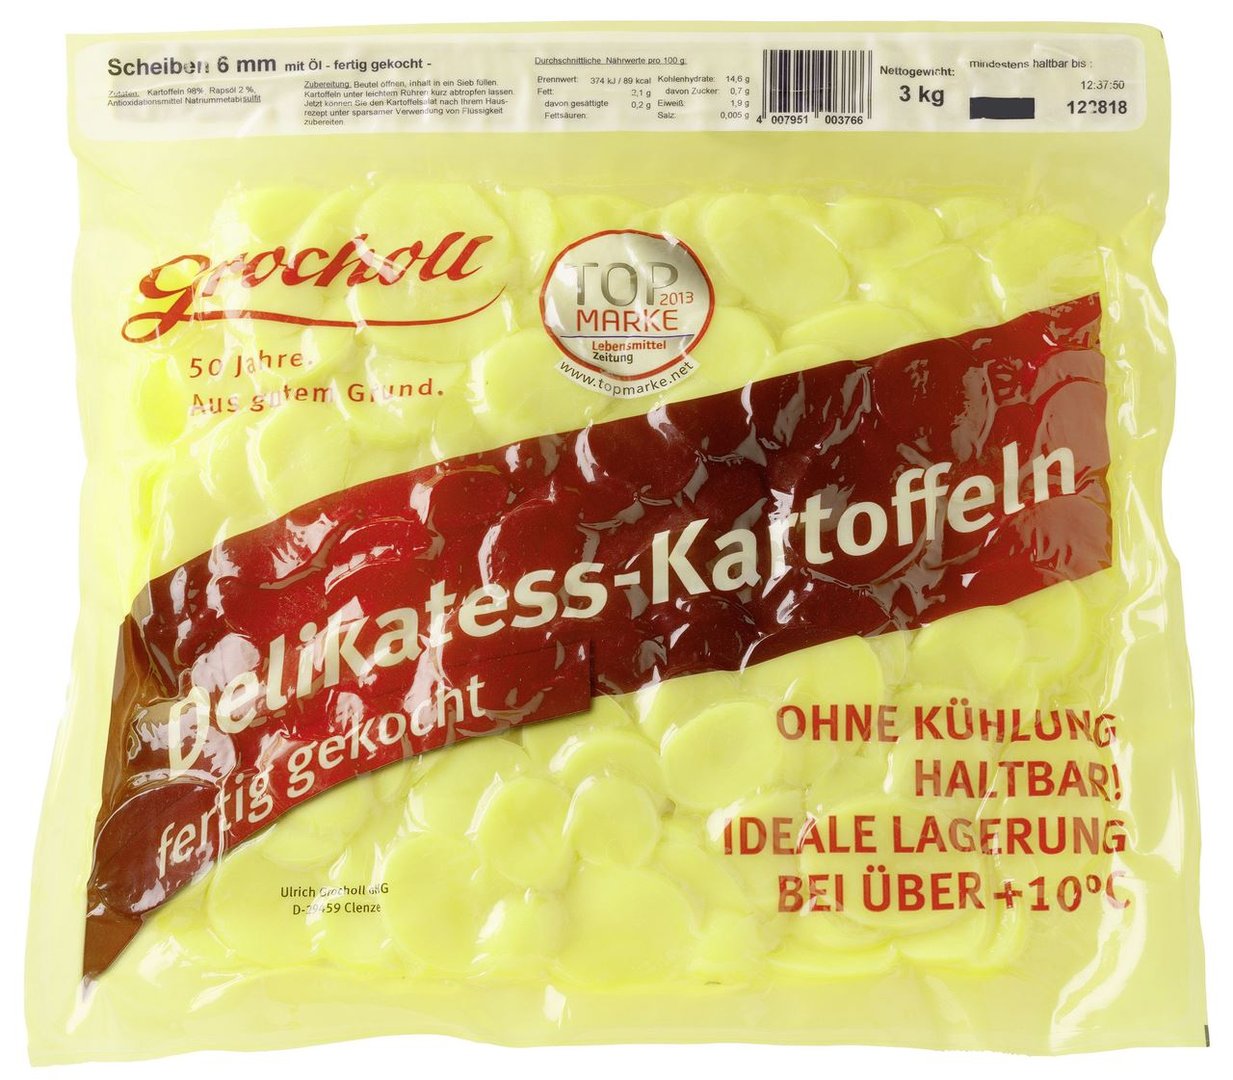 Grocholl - Kartoffel Scheiben in Öl, Kartoffeln (98,2 %), Rapsöl (1,8 %), 6 mm - 3 kg Beutel